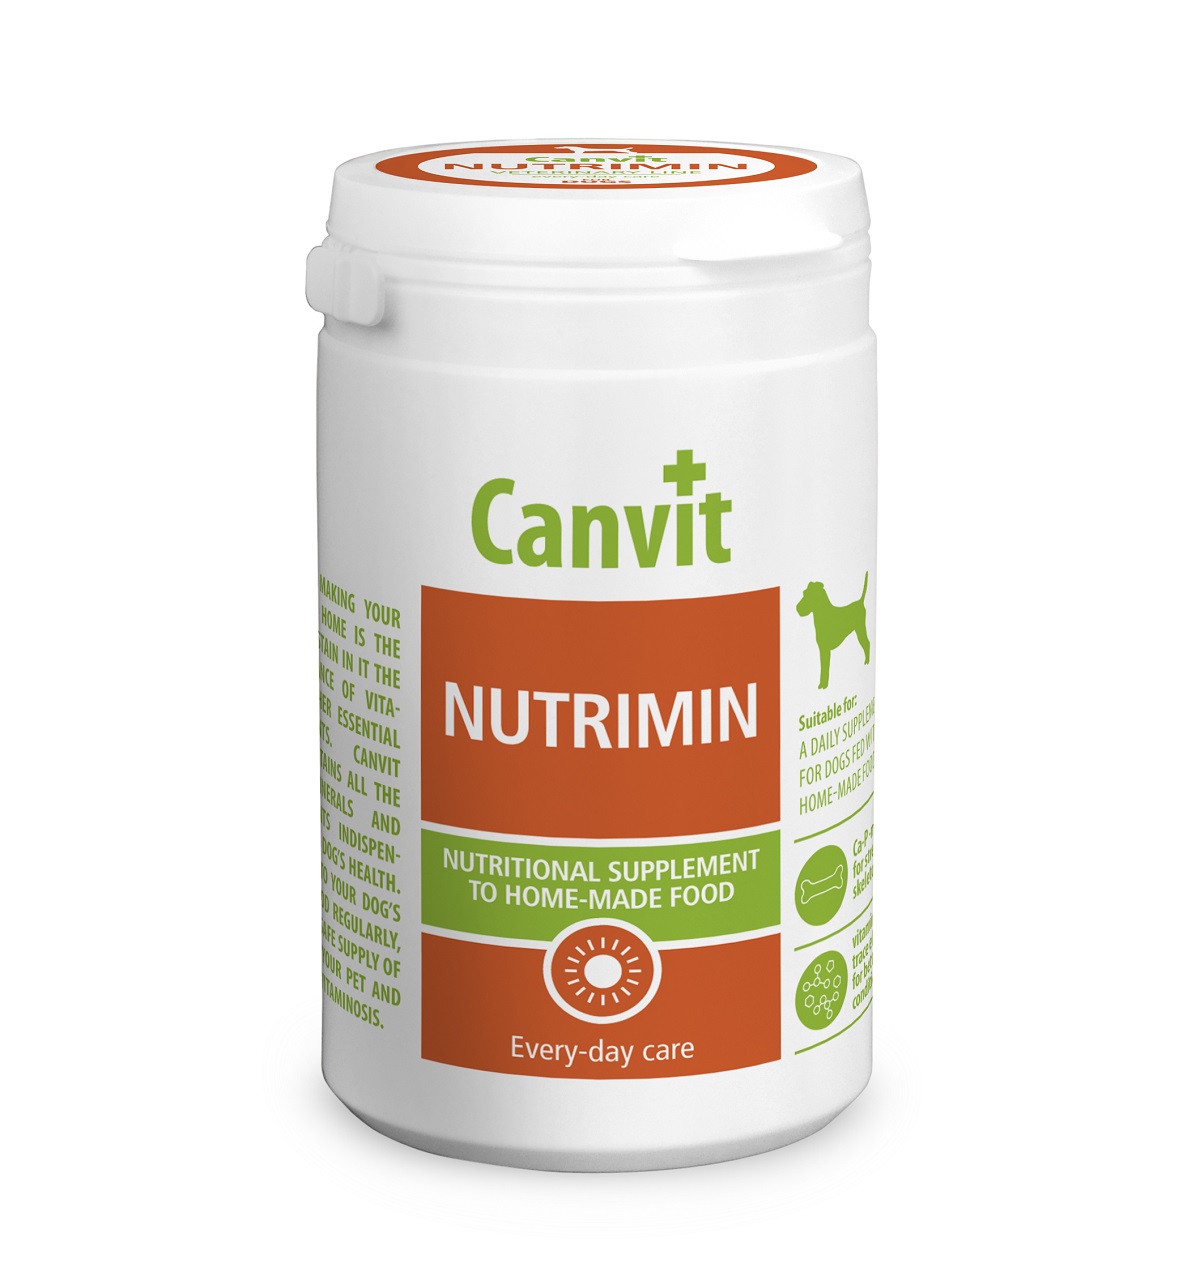 CANVIT Nutrimin pro psy plv 1000g